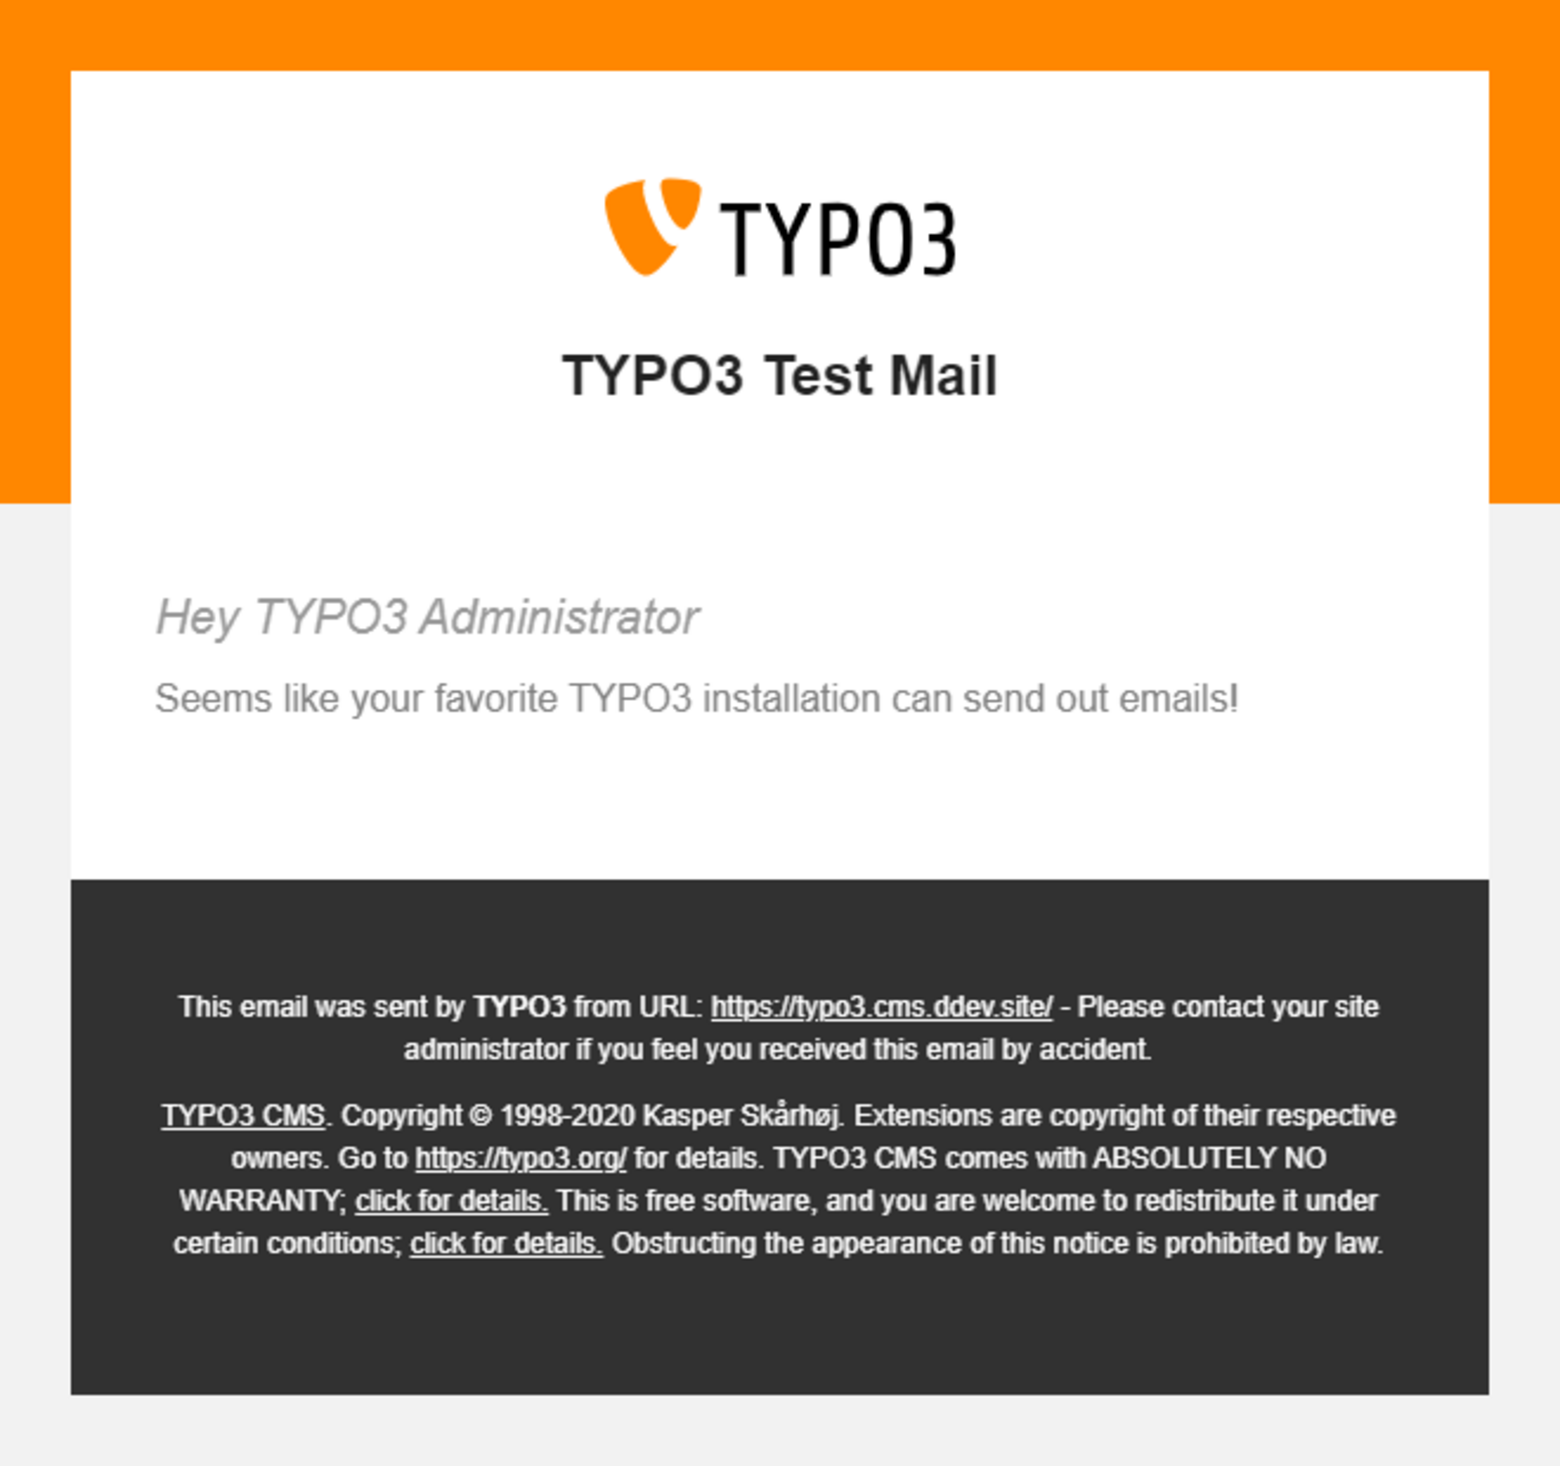 Eine Testmail in Typo3 vor den klassischen Typo3-Farben orange, schwarz und weiß.